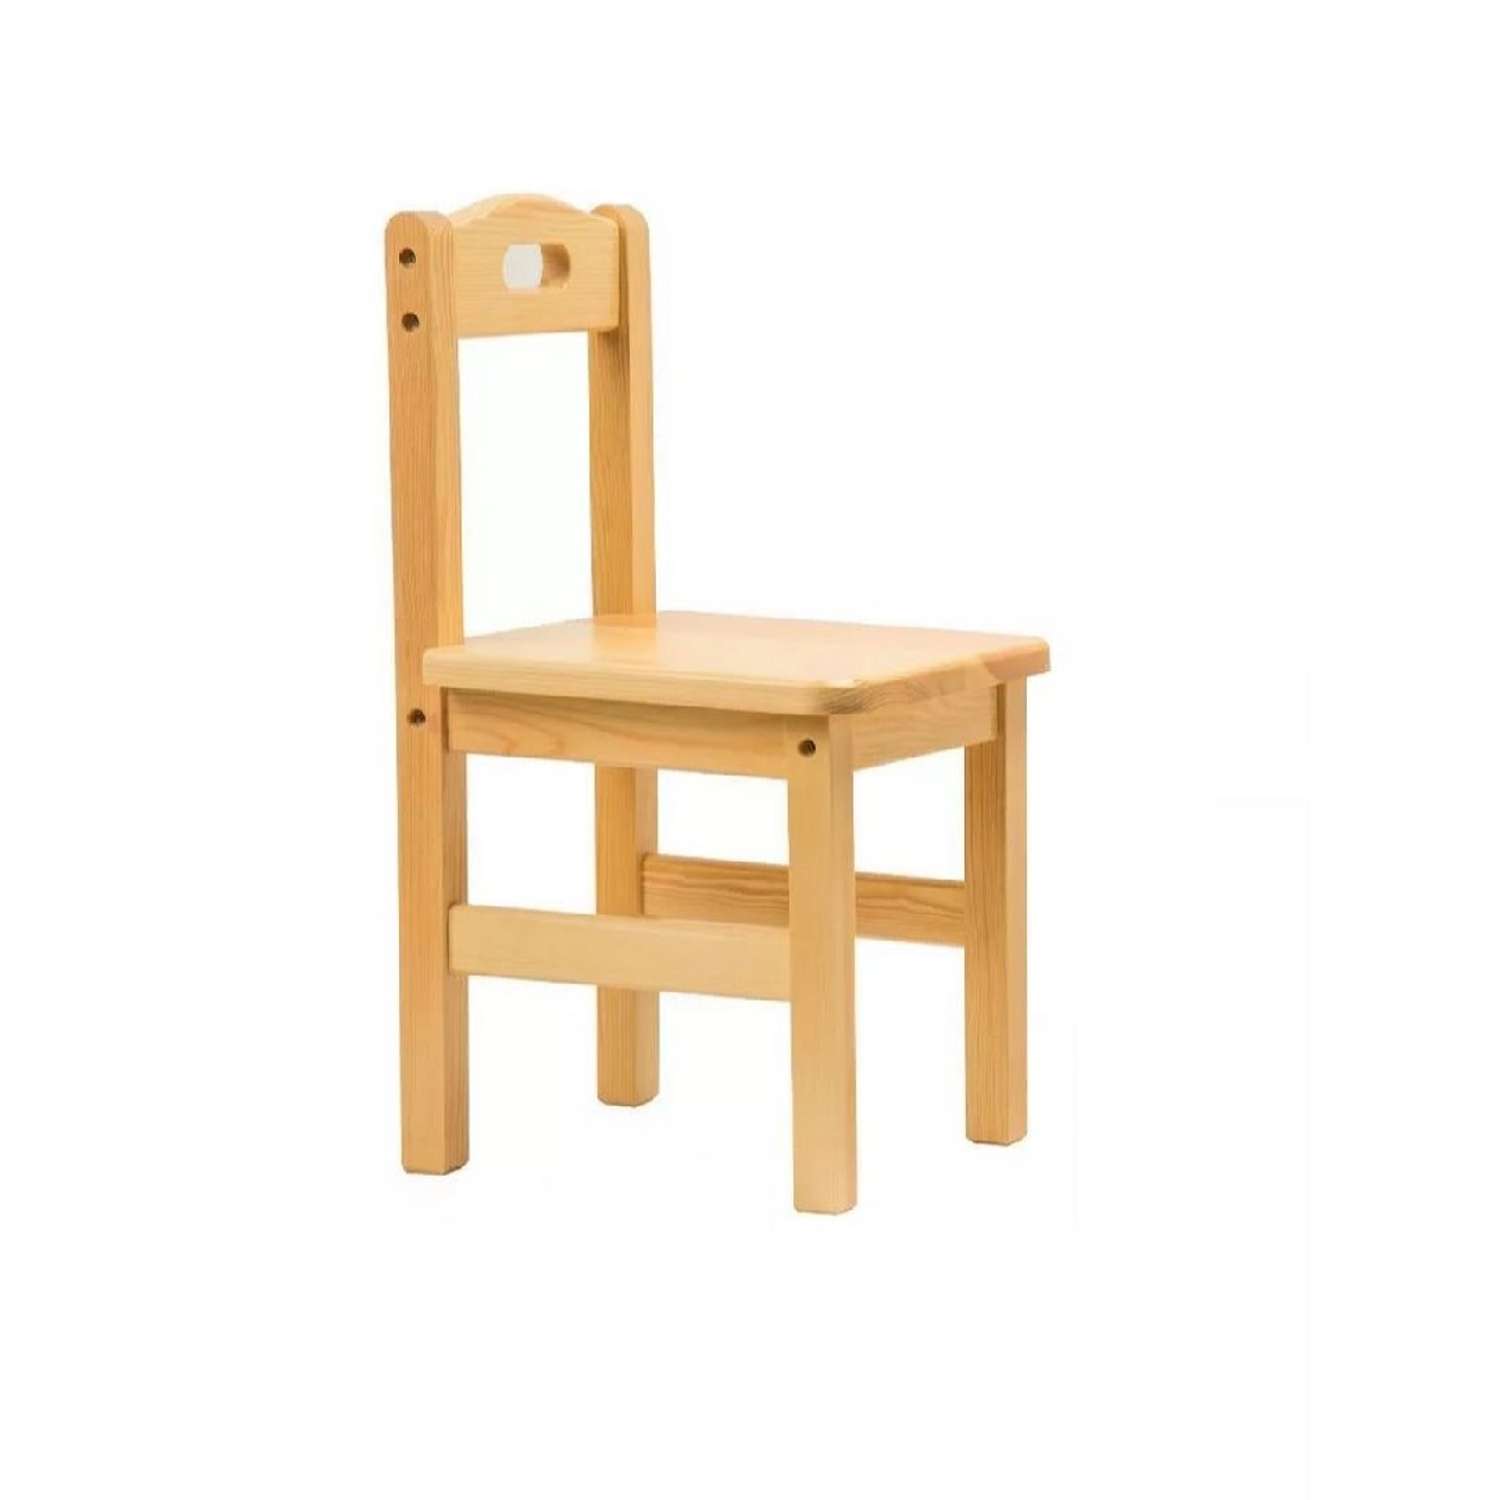 Стул Мебель для дошколят деревянный для детей от 1 до 3 лет - фото 2